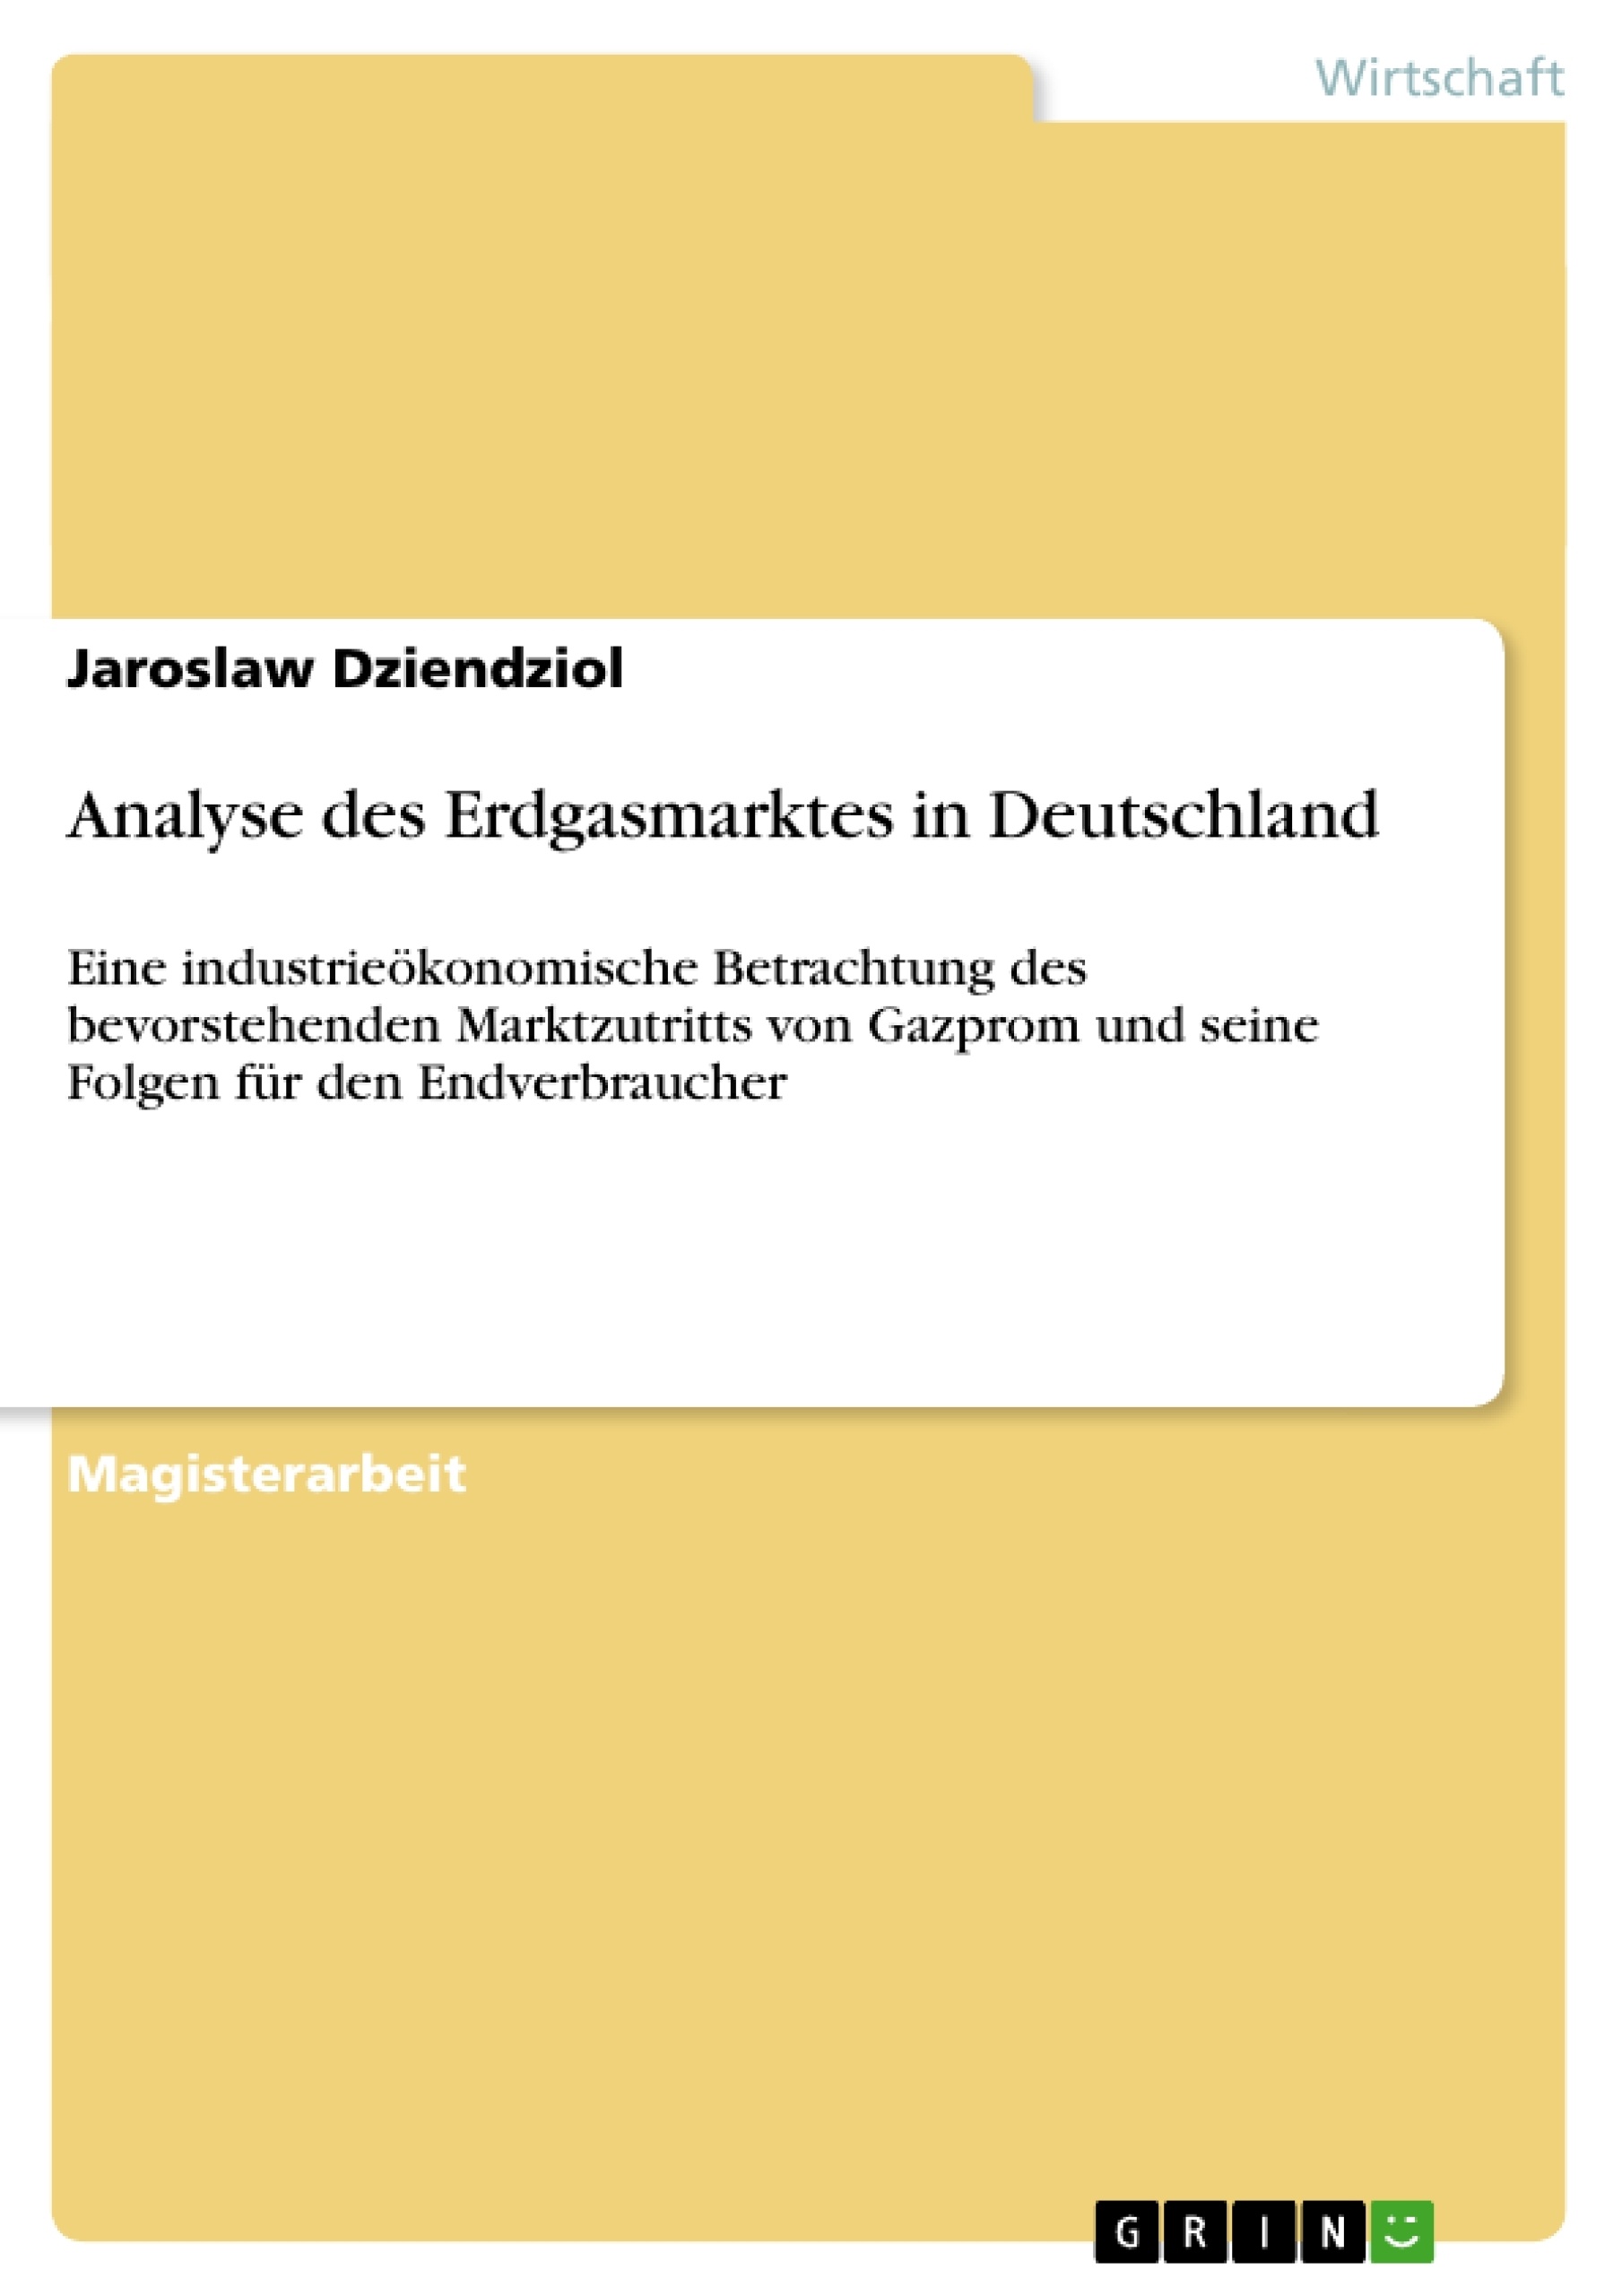 Title: Analyse des Erdgasmarktes in Deutschland